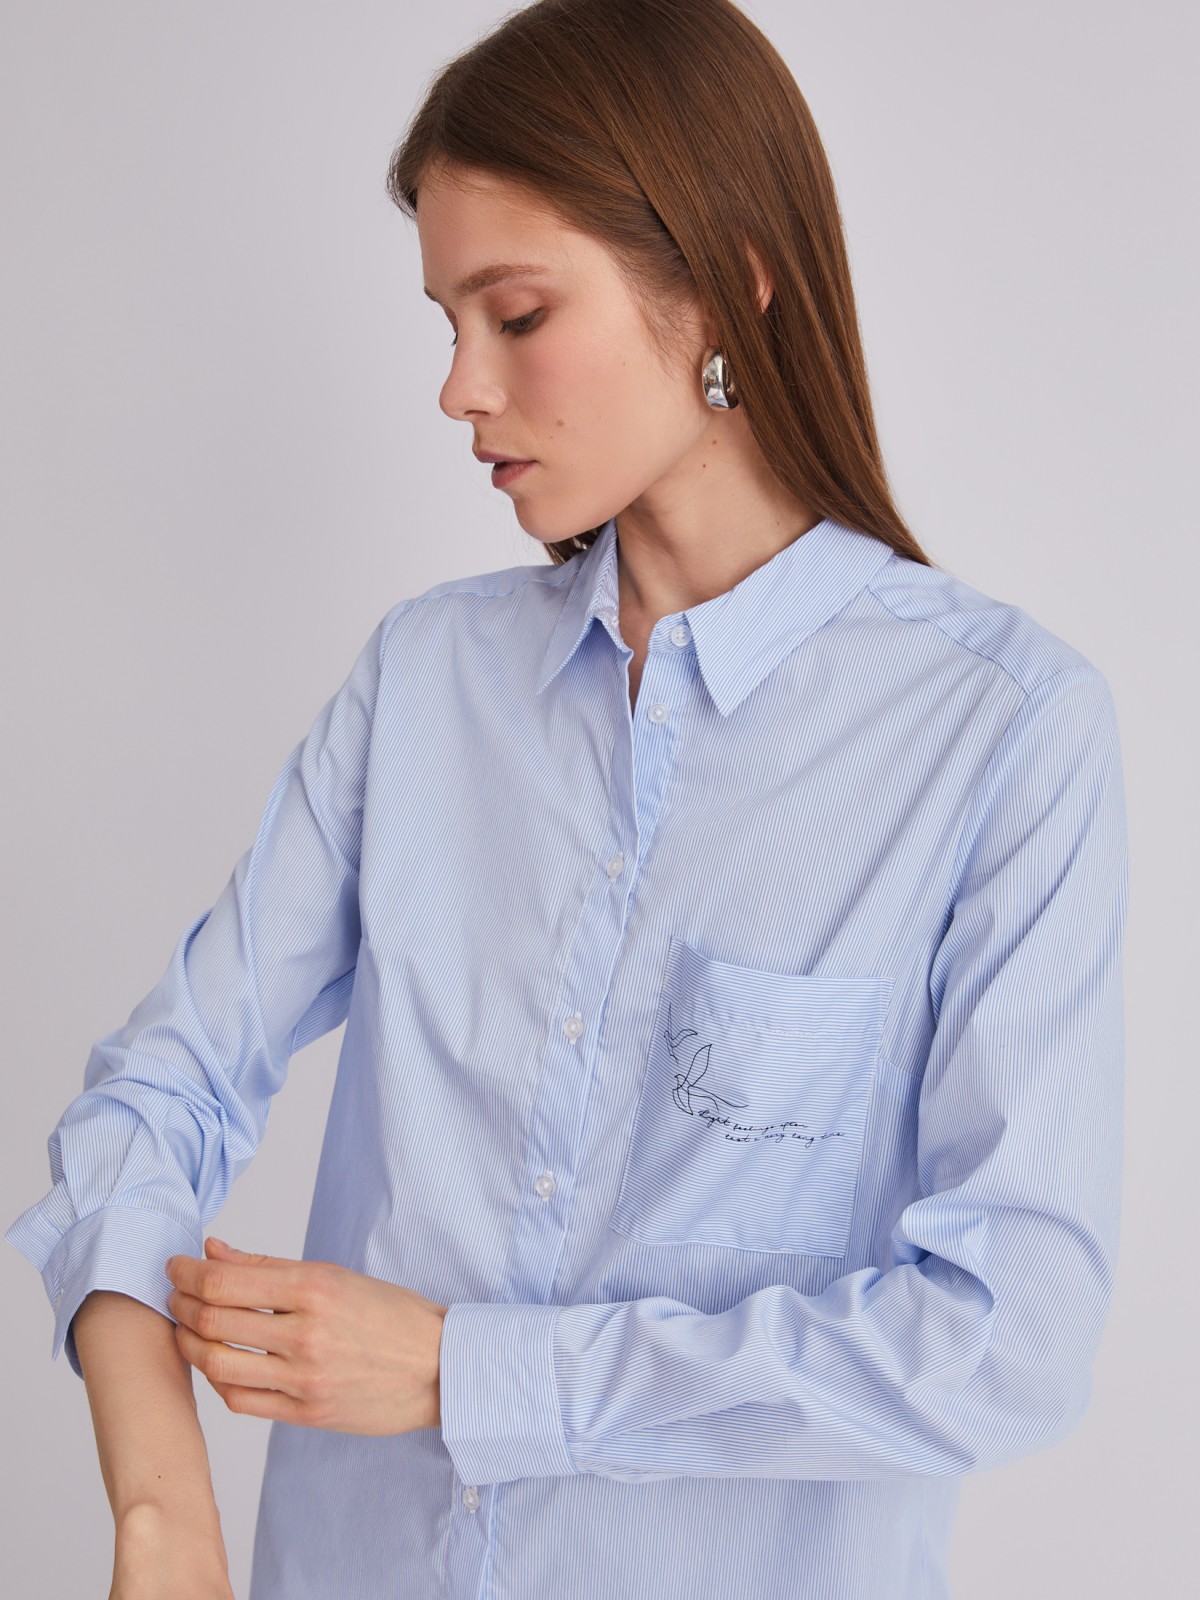 Офисная рубашка прямого силуэта с акцентом на кармане zolla 223311159242, цвет светло-голубой, размер M - фото 5